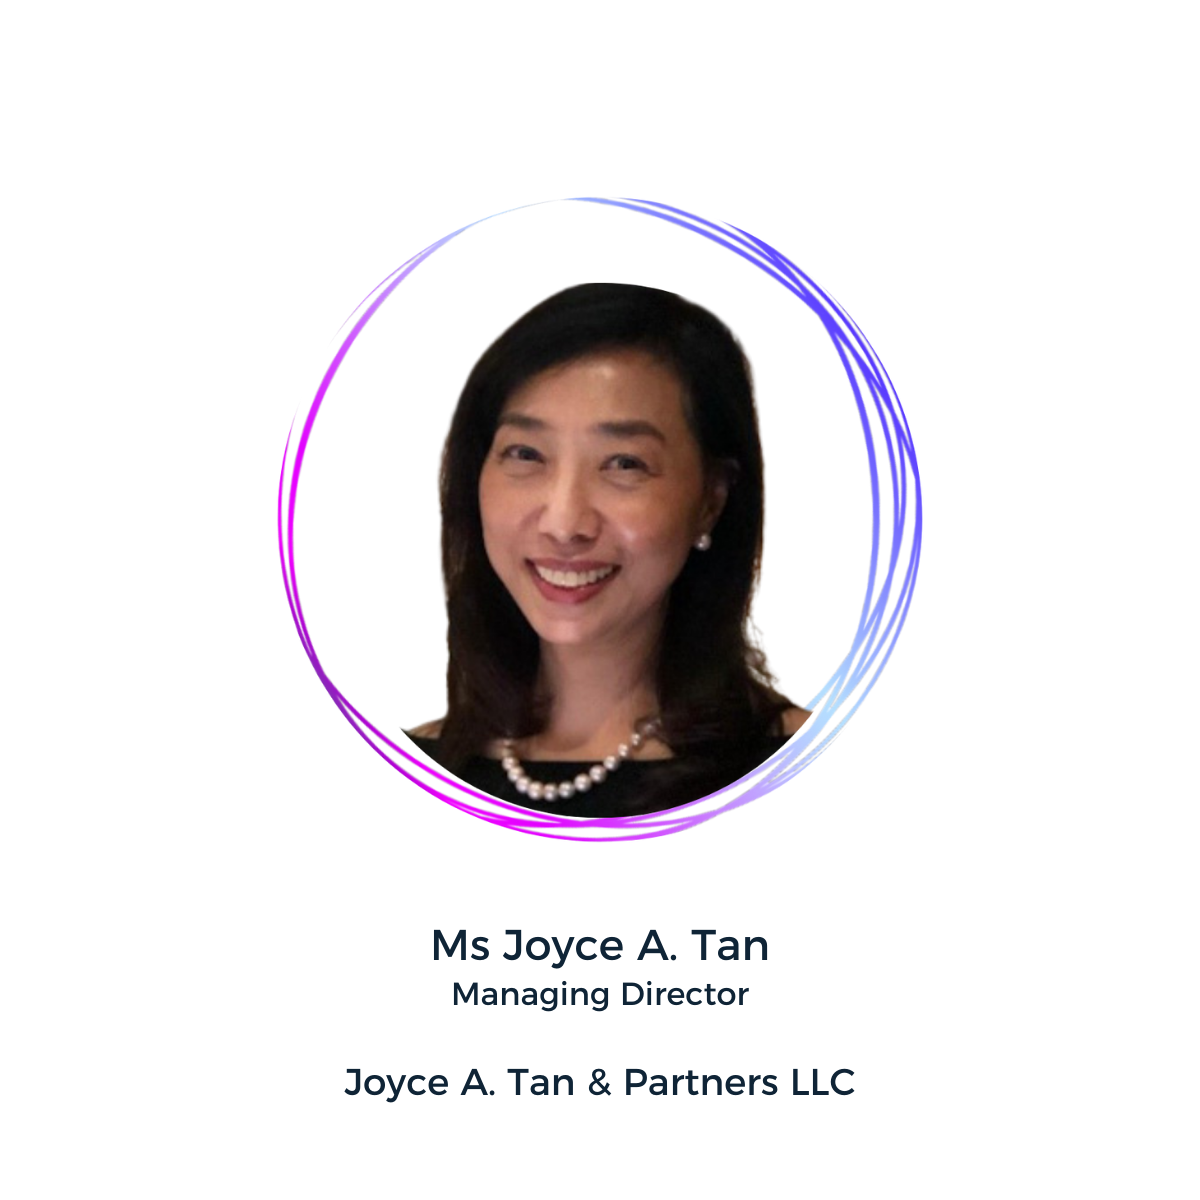 Joyce A. Tan